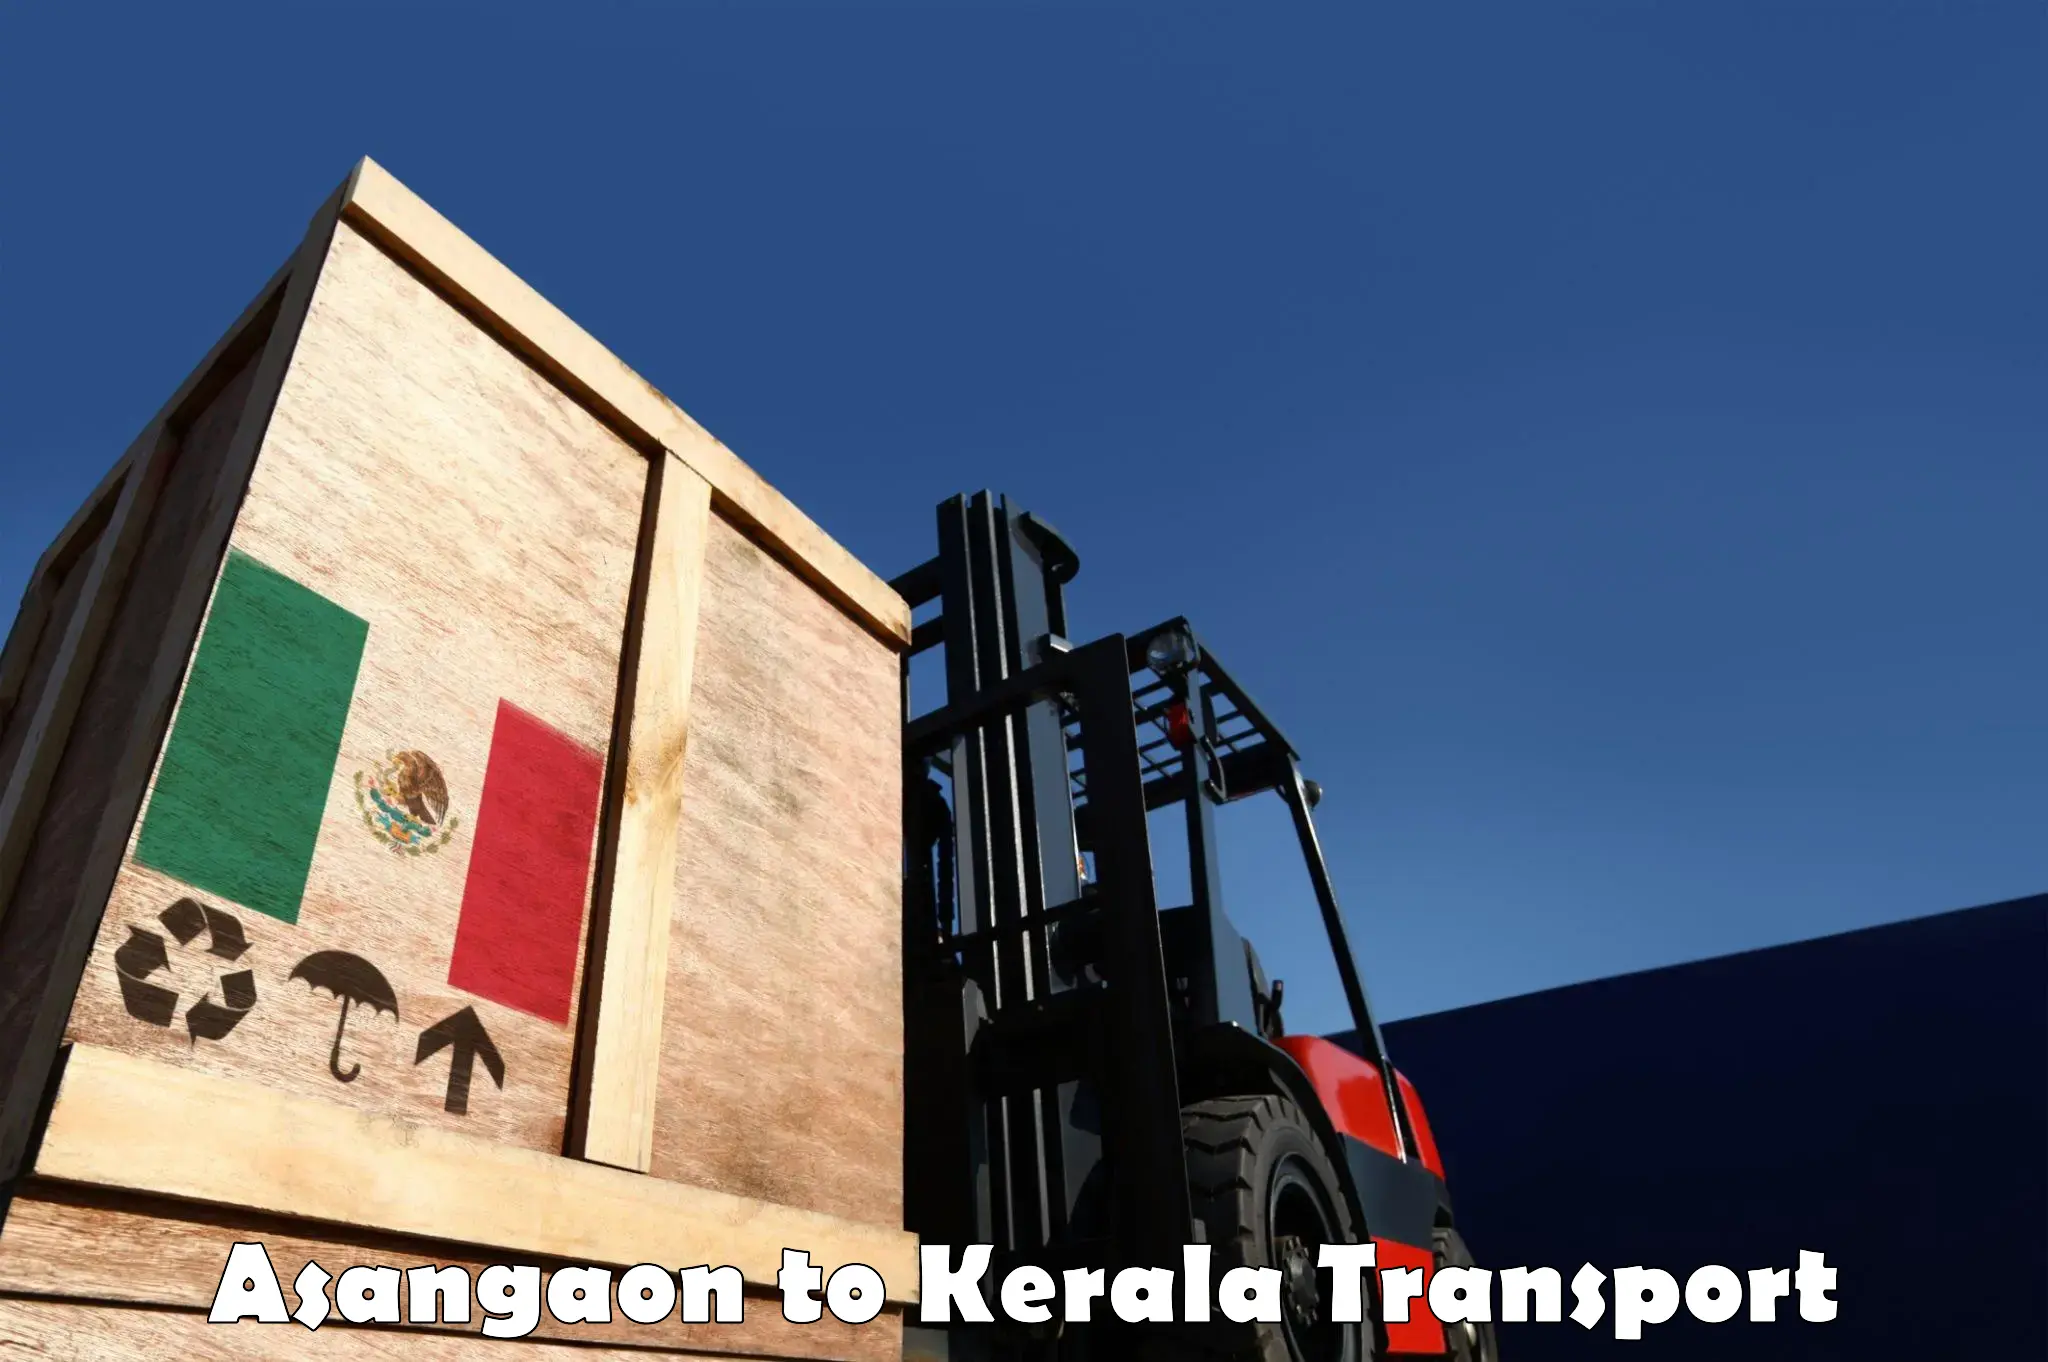 Nearby transport service Asangaon to Chiramanangad